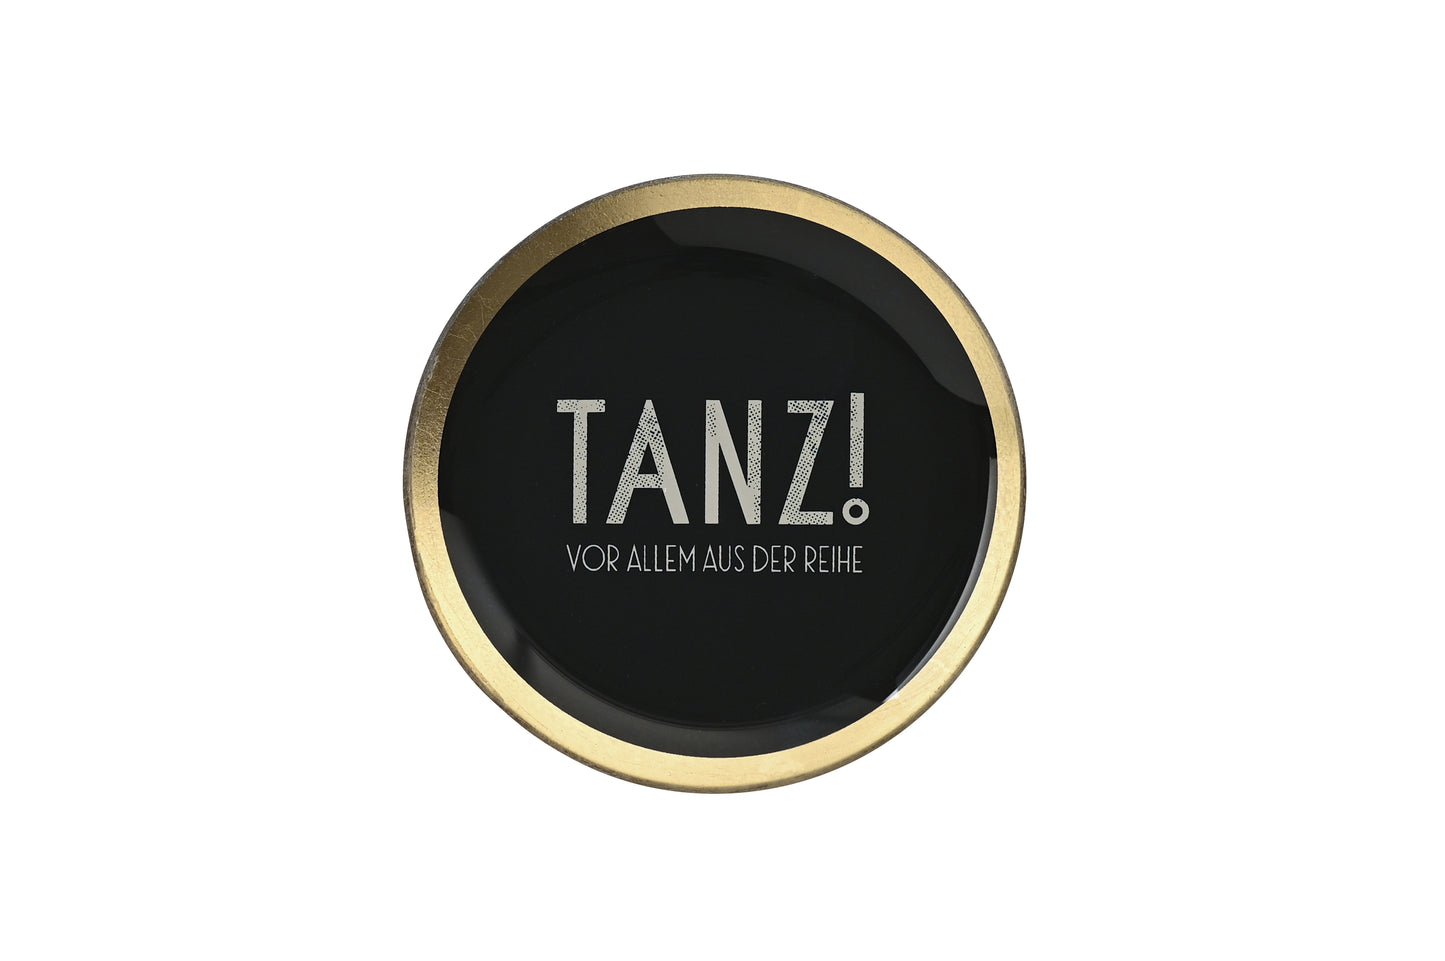 Love Plate TANZ!, Glasteller M rund, schwarz